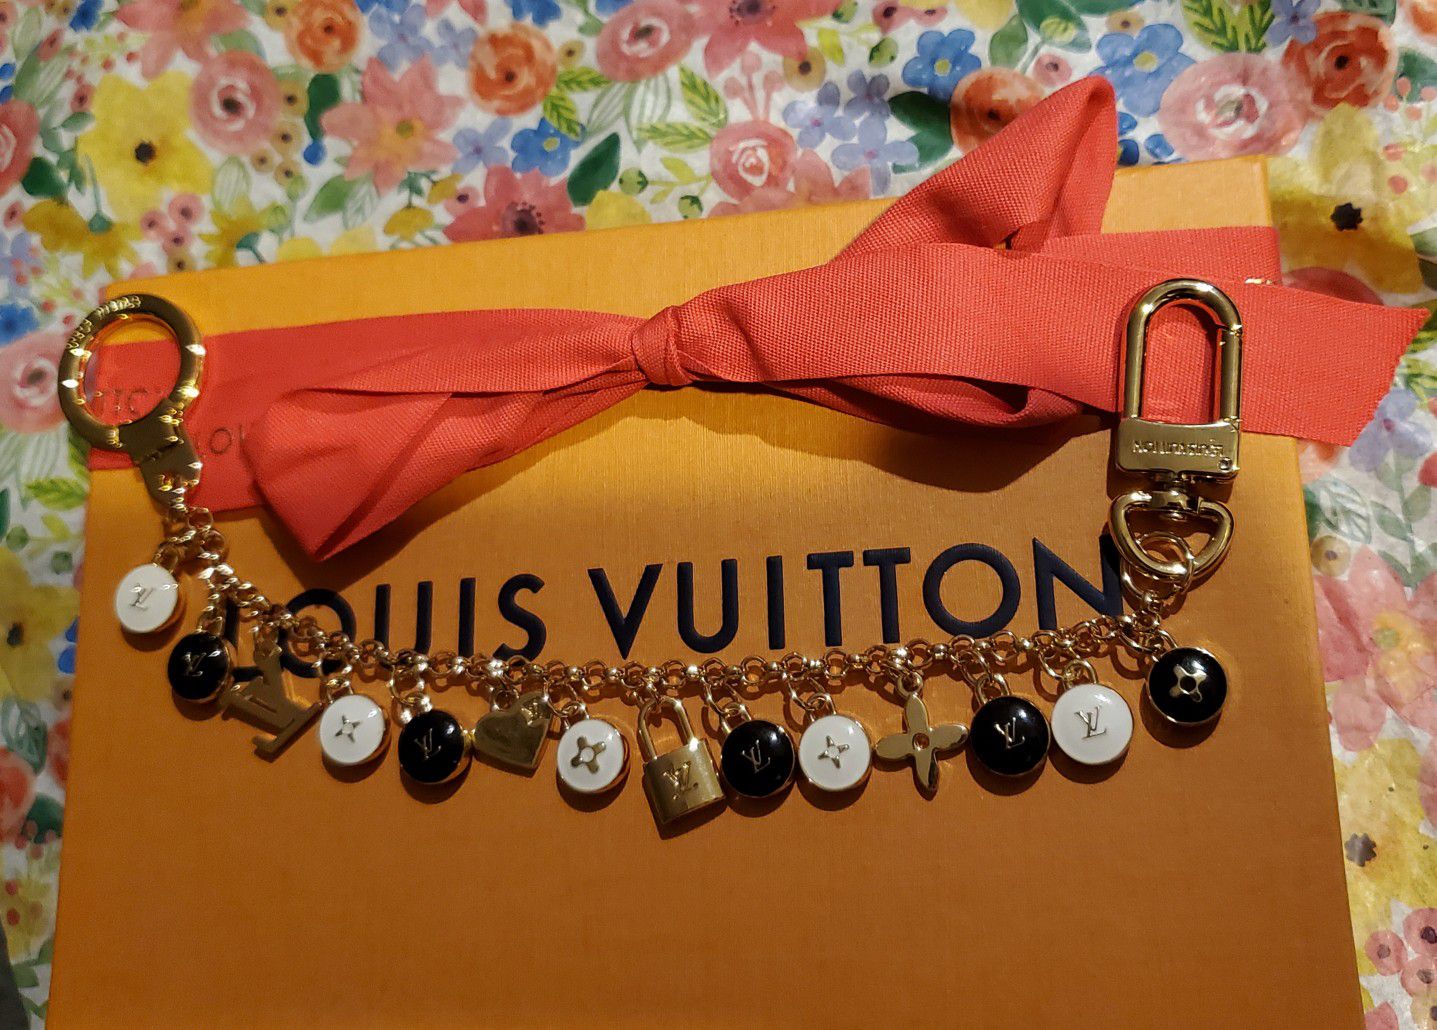 Louis Vuitton bag charm keychain